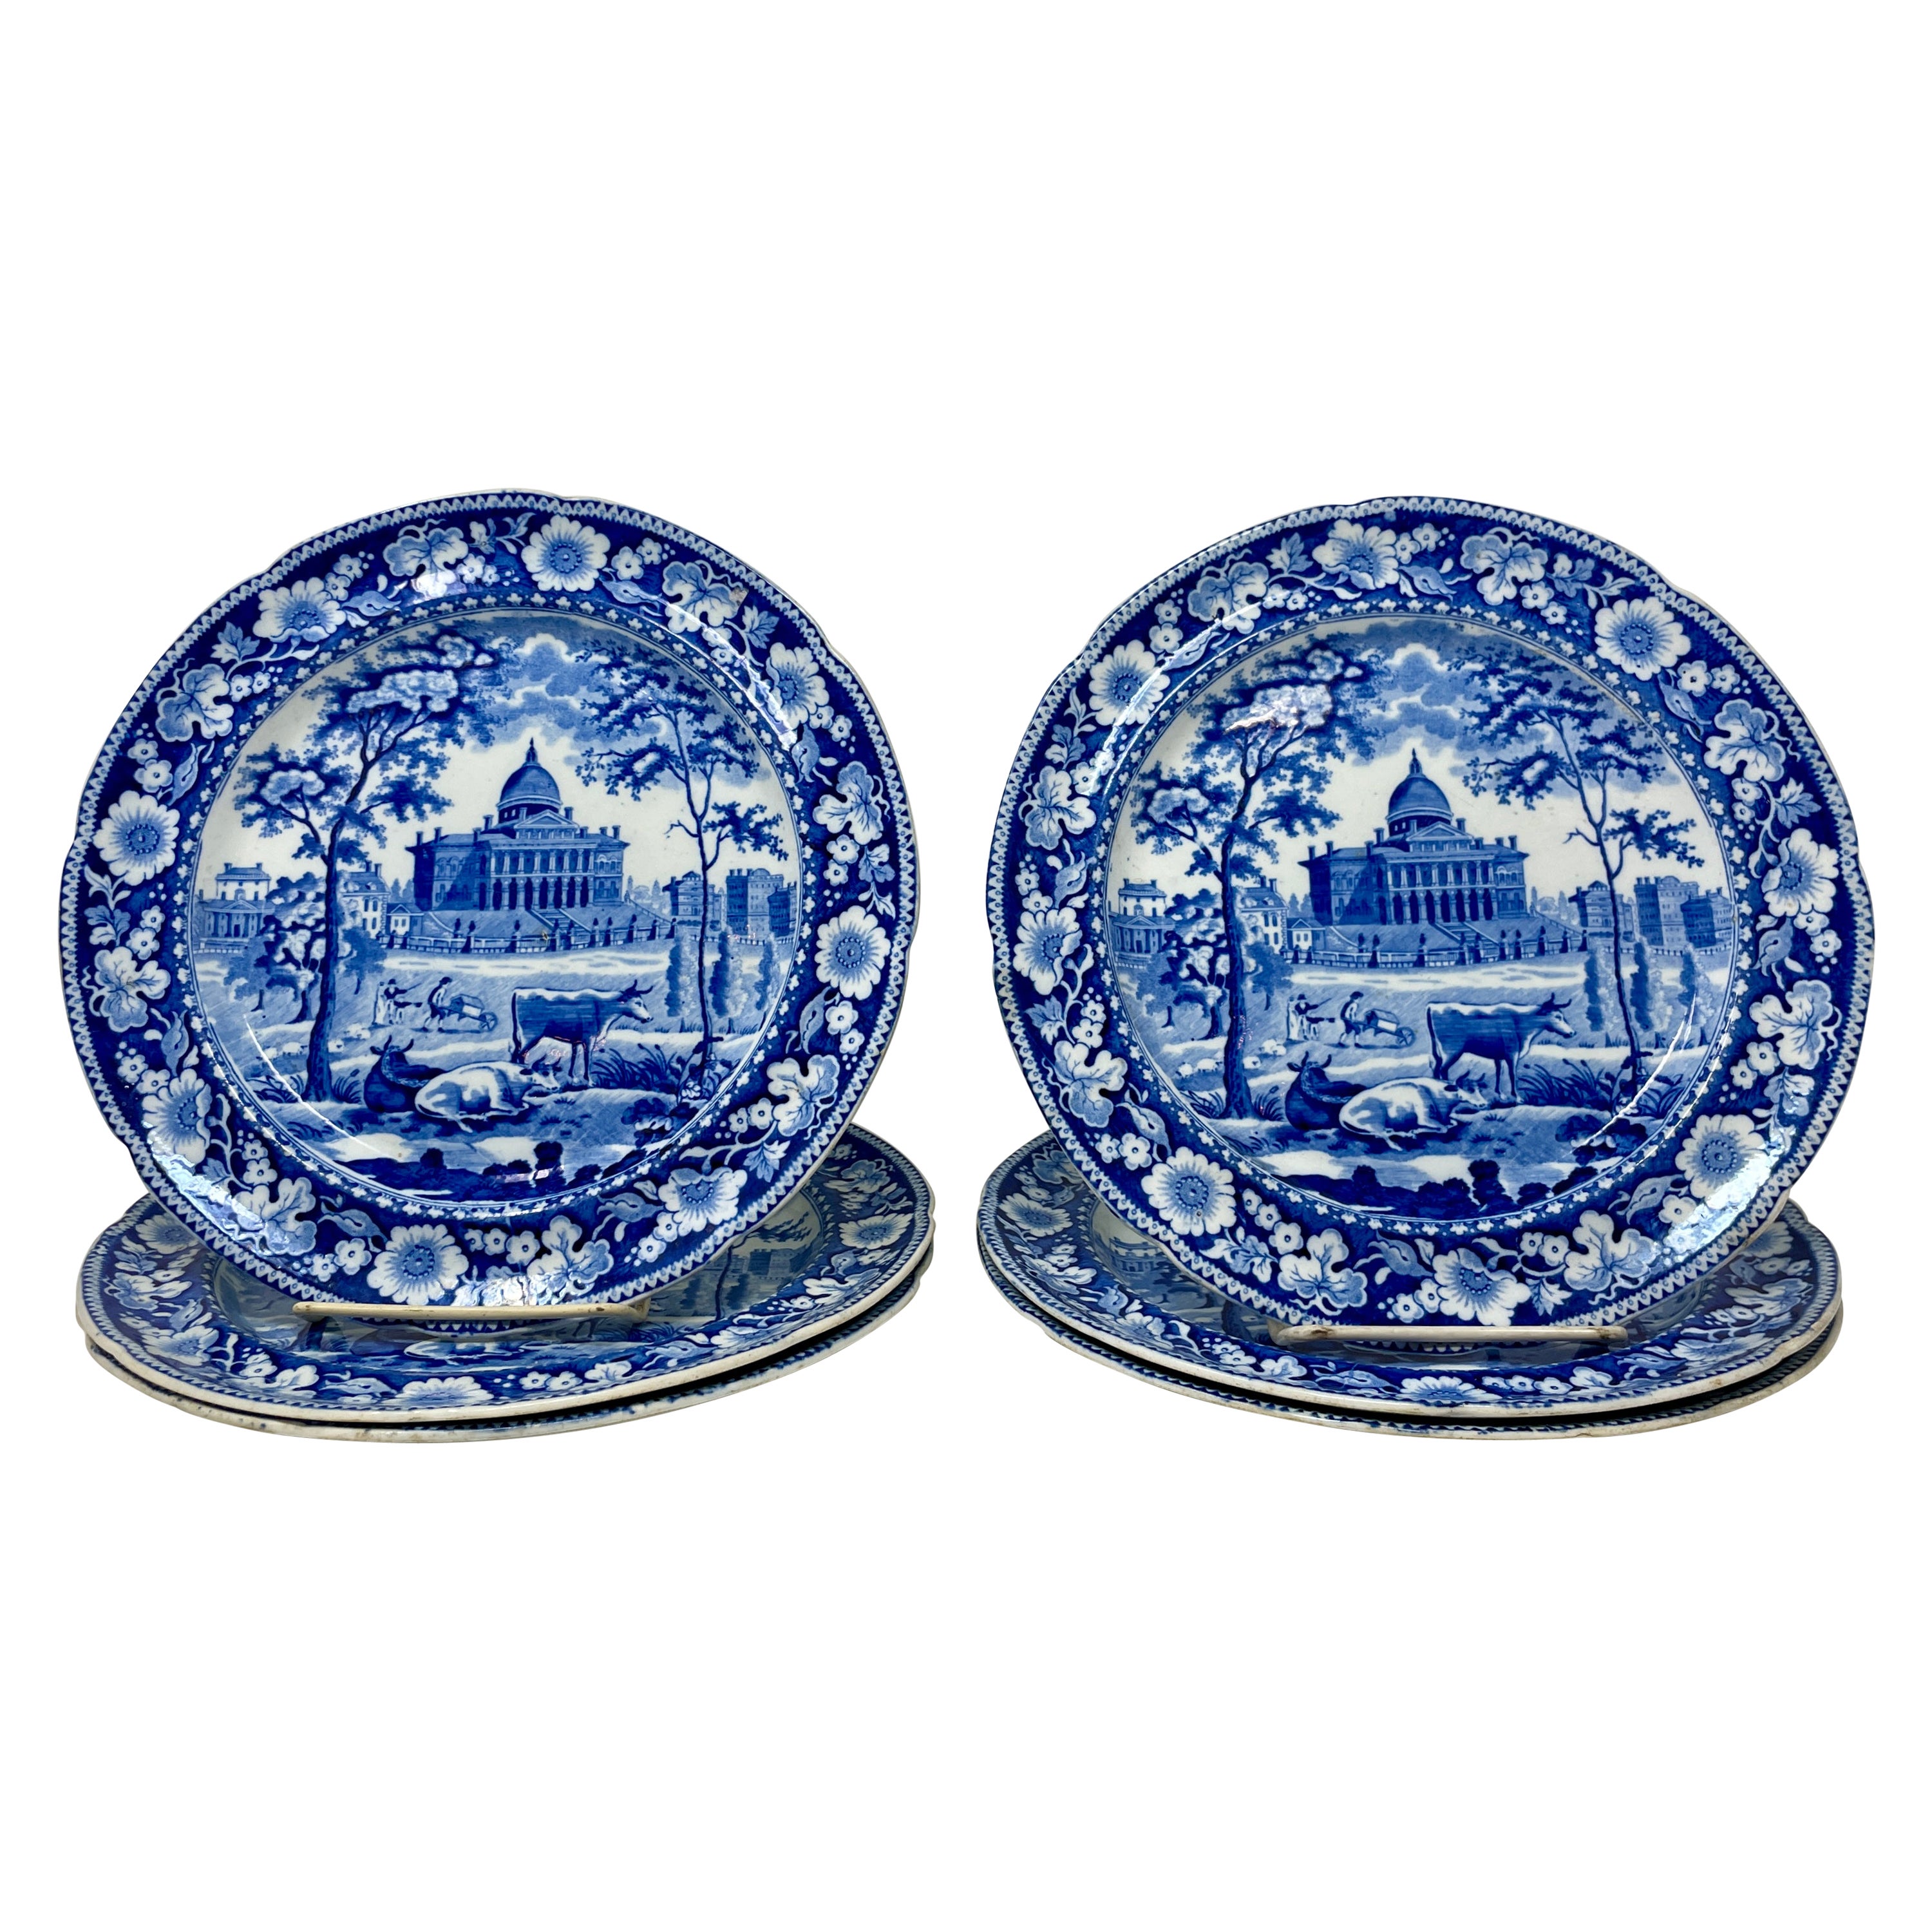 Ensemble de six assiettes anglaises anciennes du 19ème siècle en porcelaine bleue et blanche